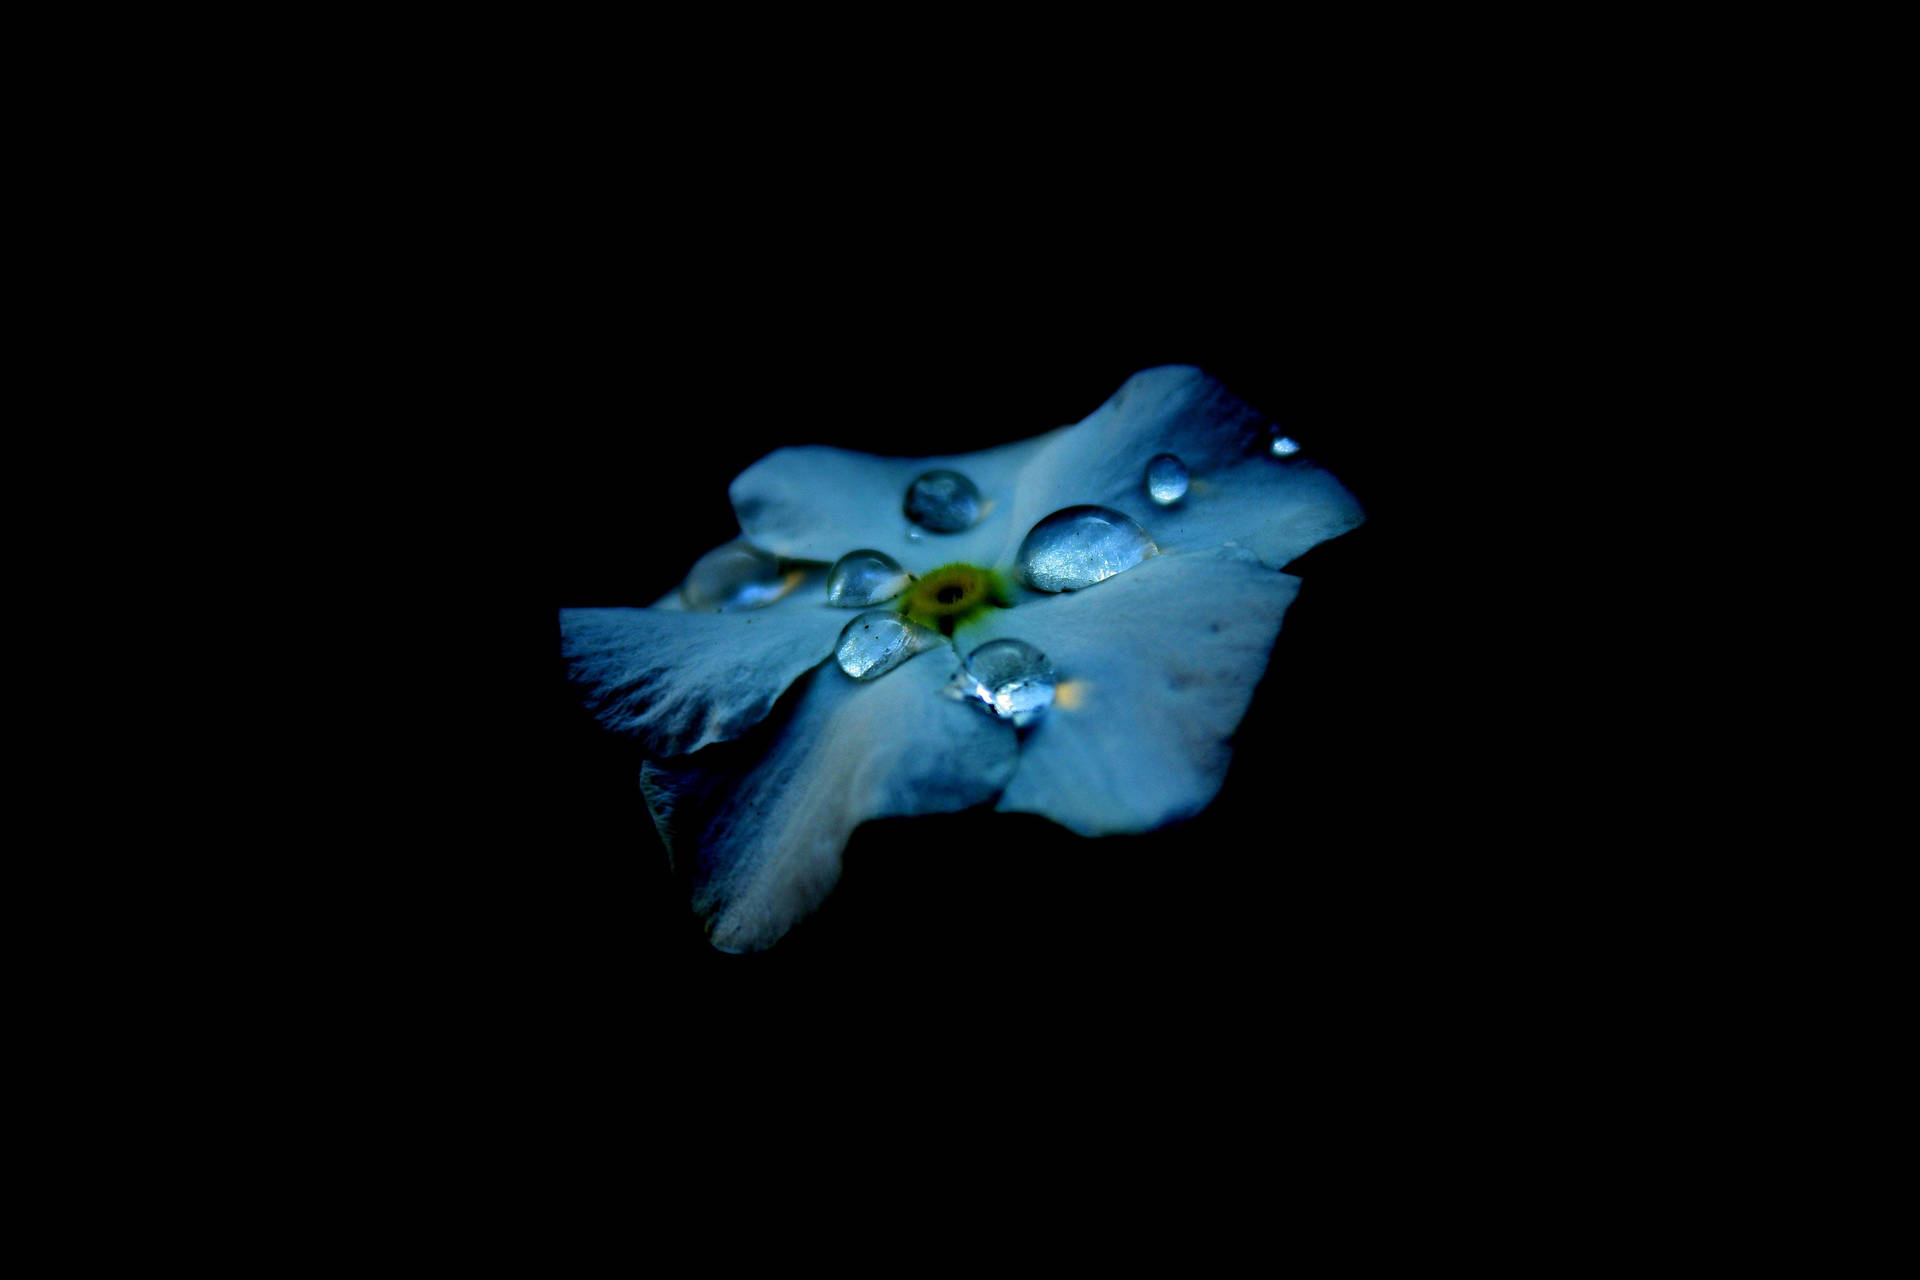 Super Amoled Flower Droplets Background